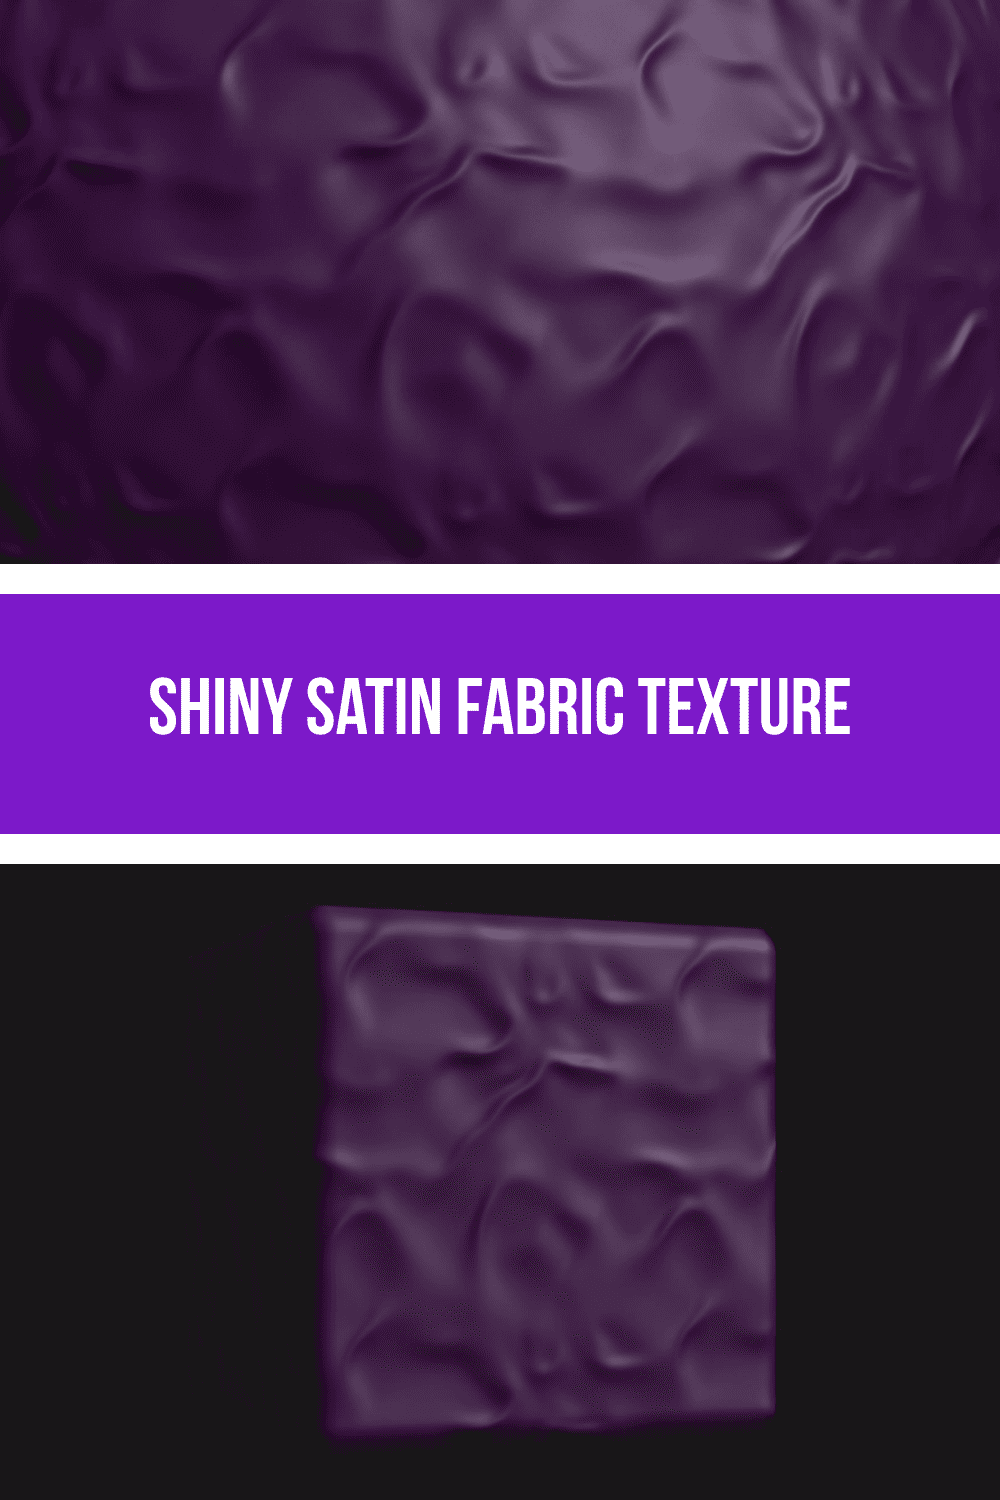 Shiny Satin Fabric Texture.